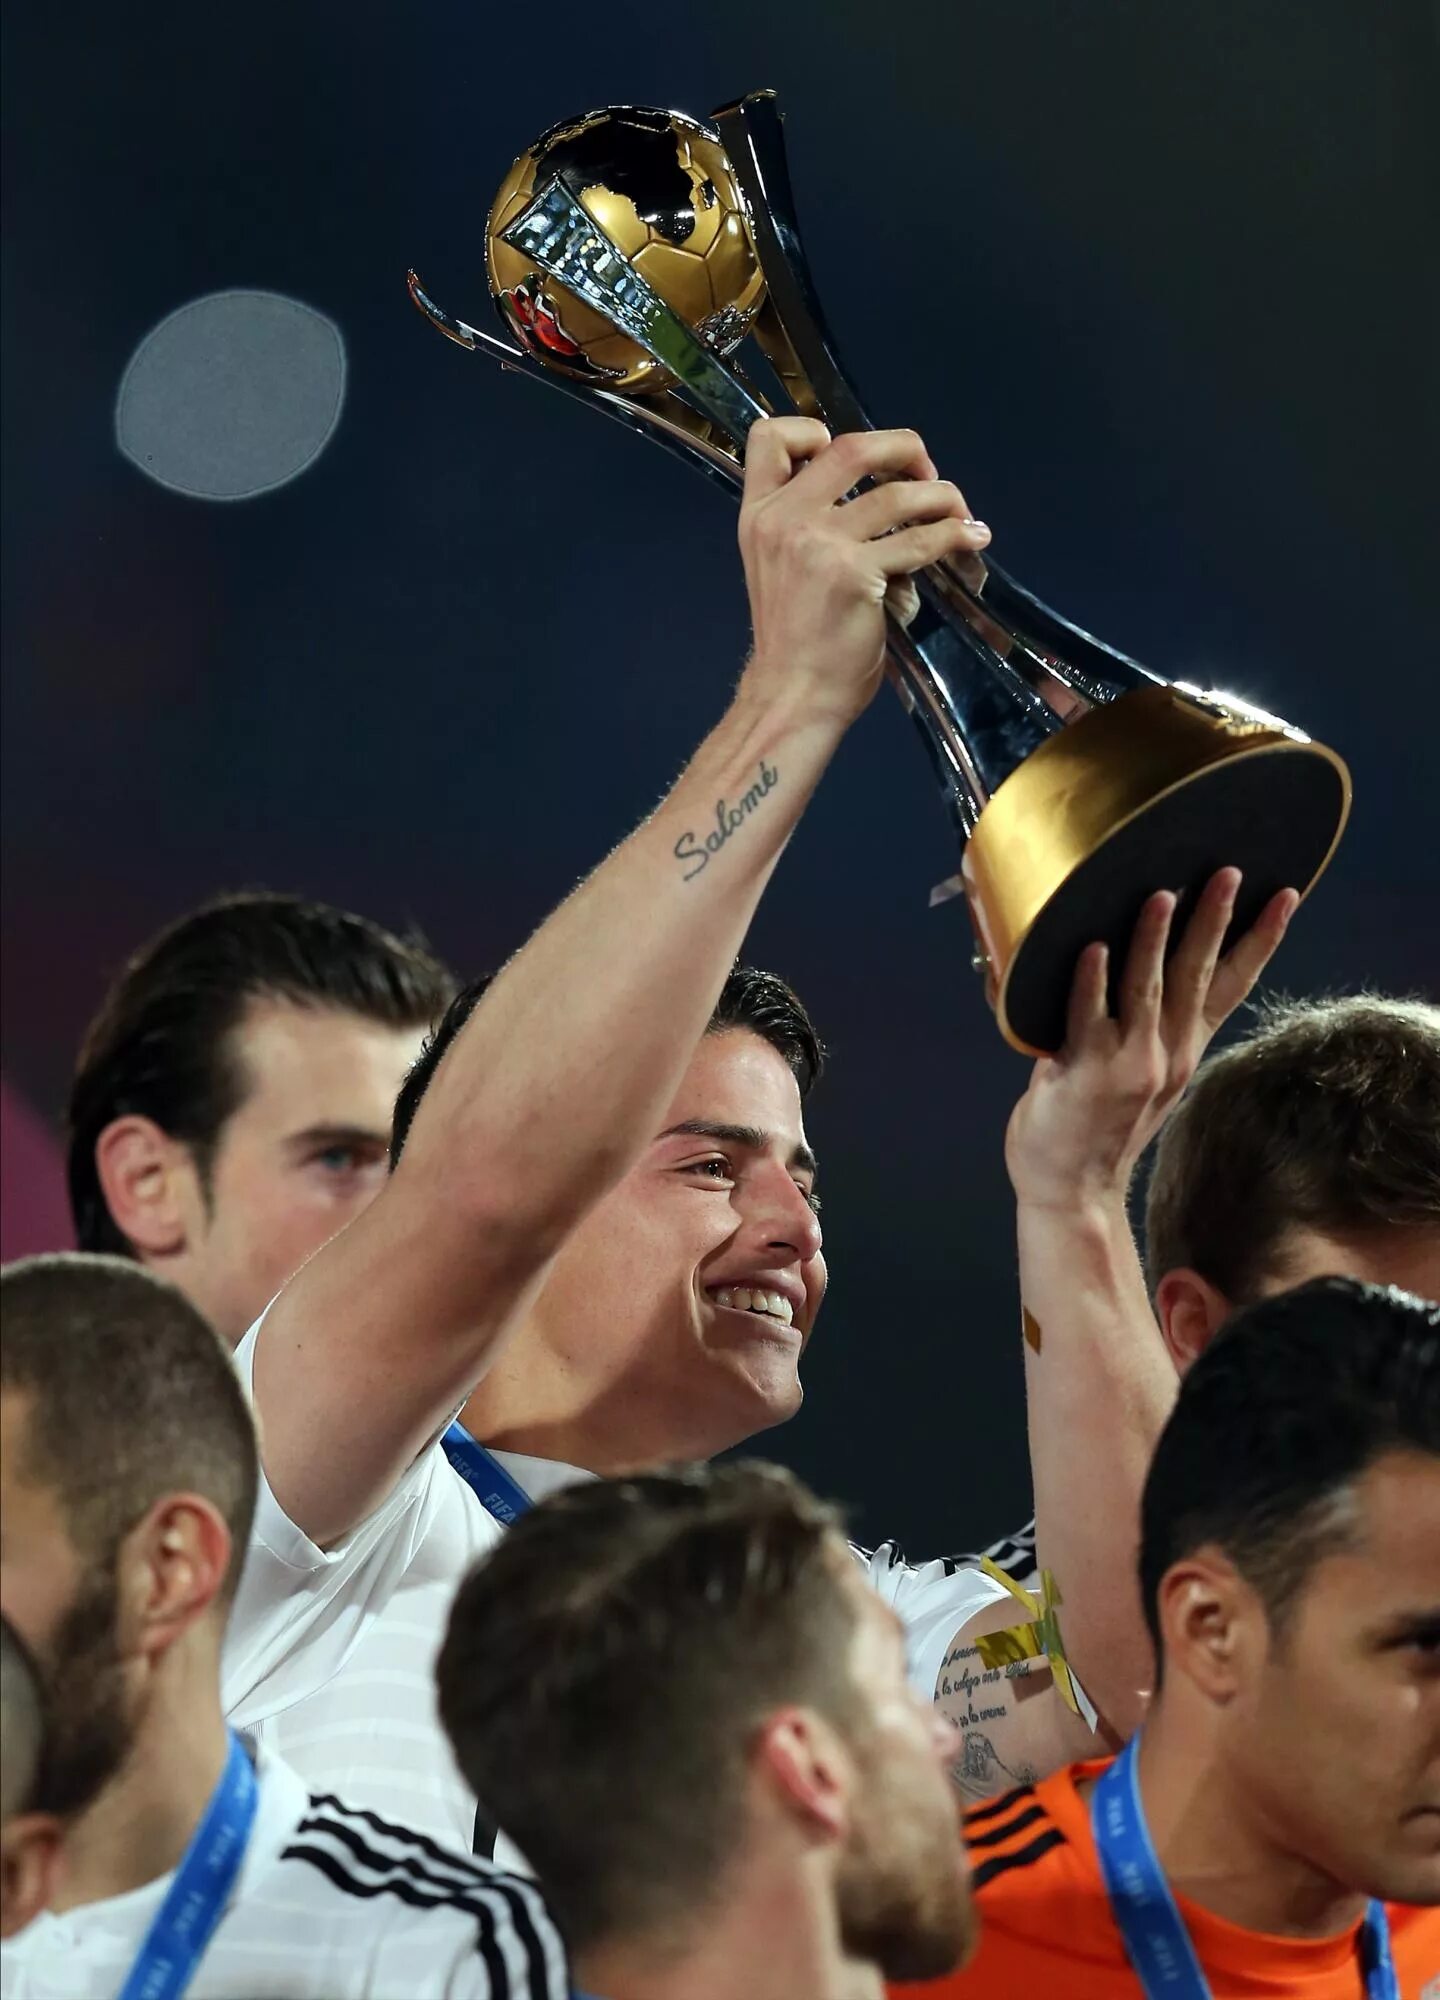 Хамес Родригес с Кубком. Хамес Родригес трофей см 2014.